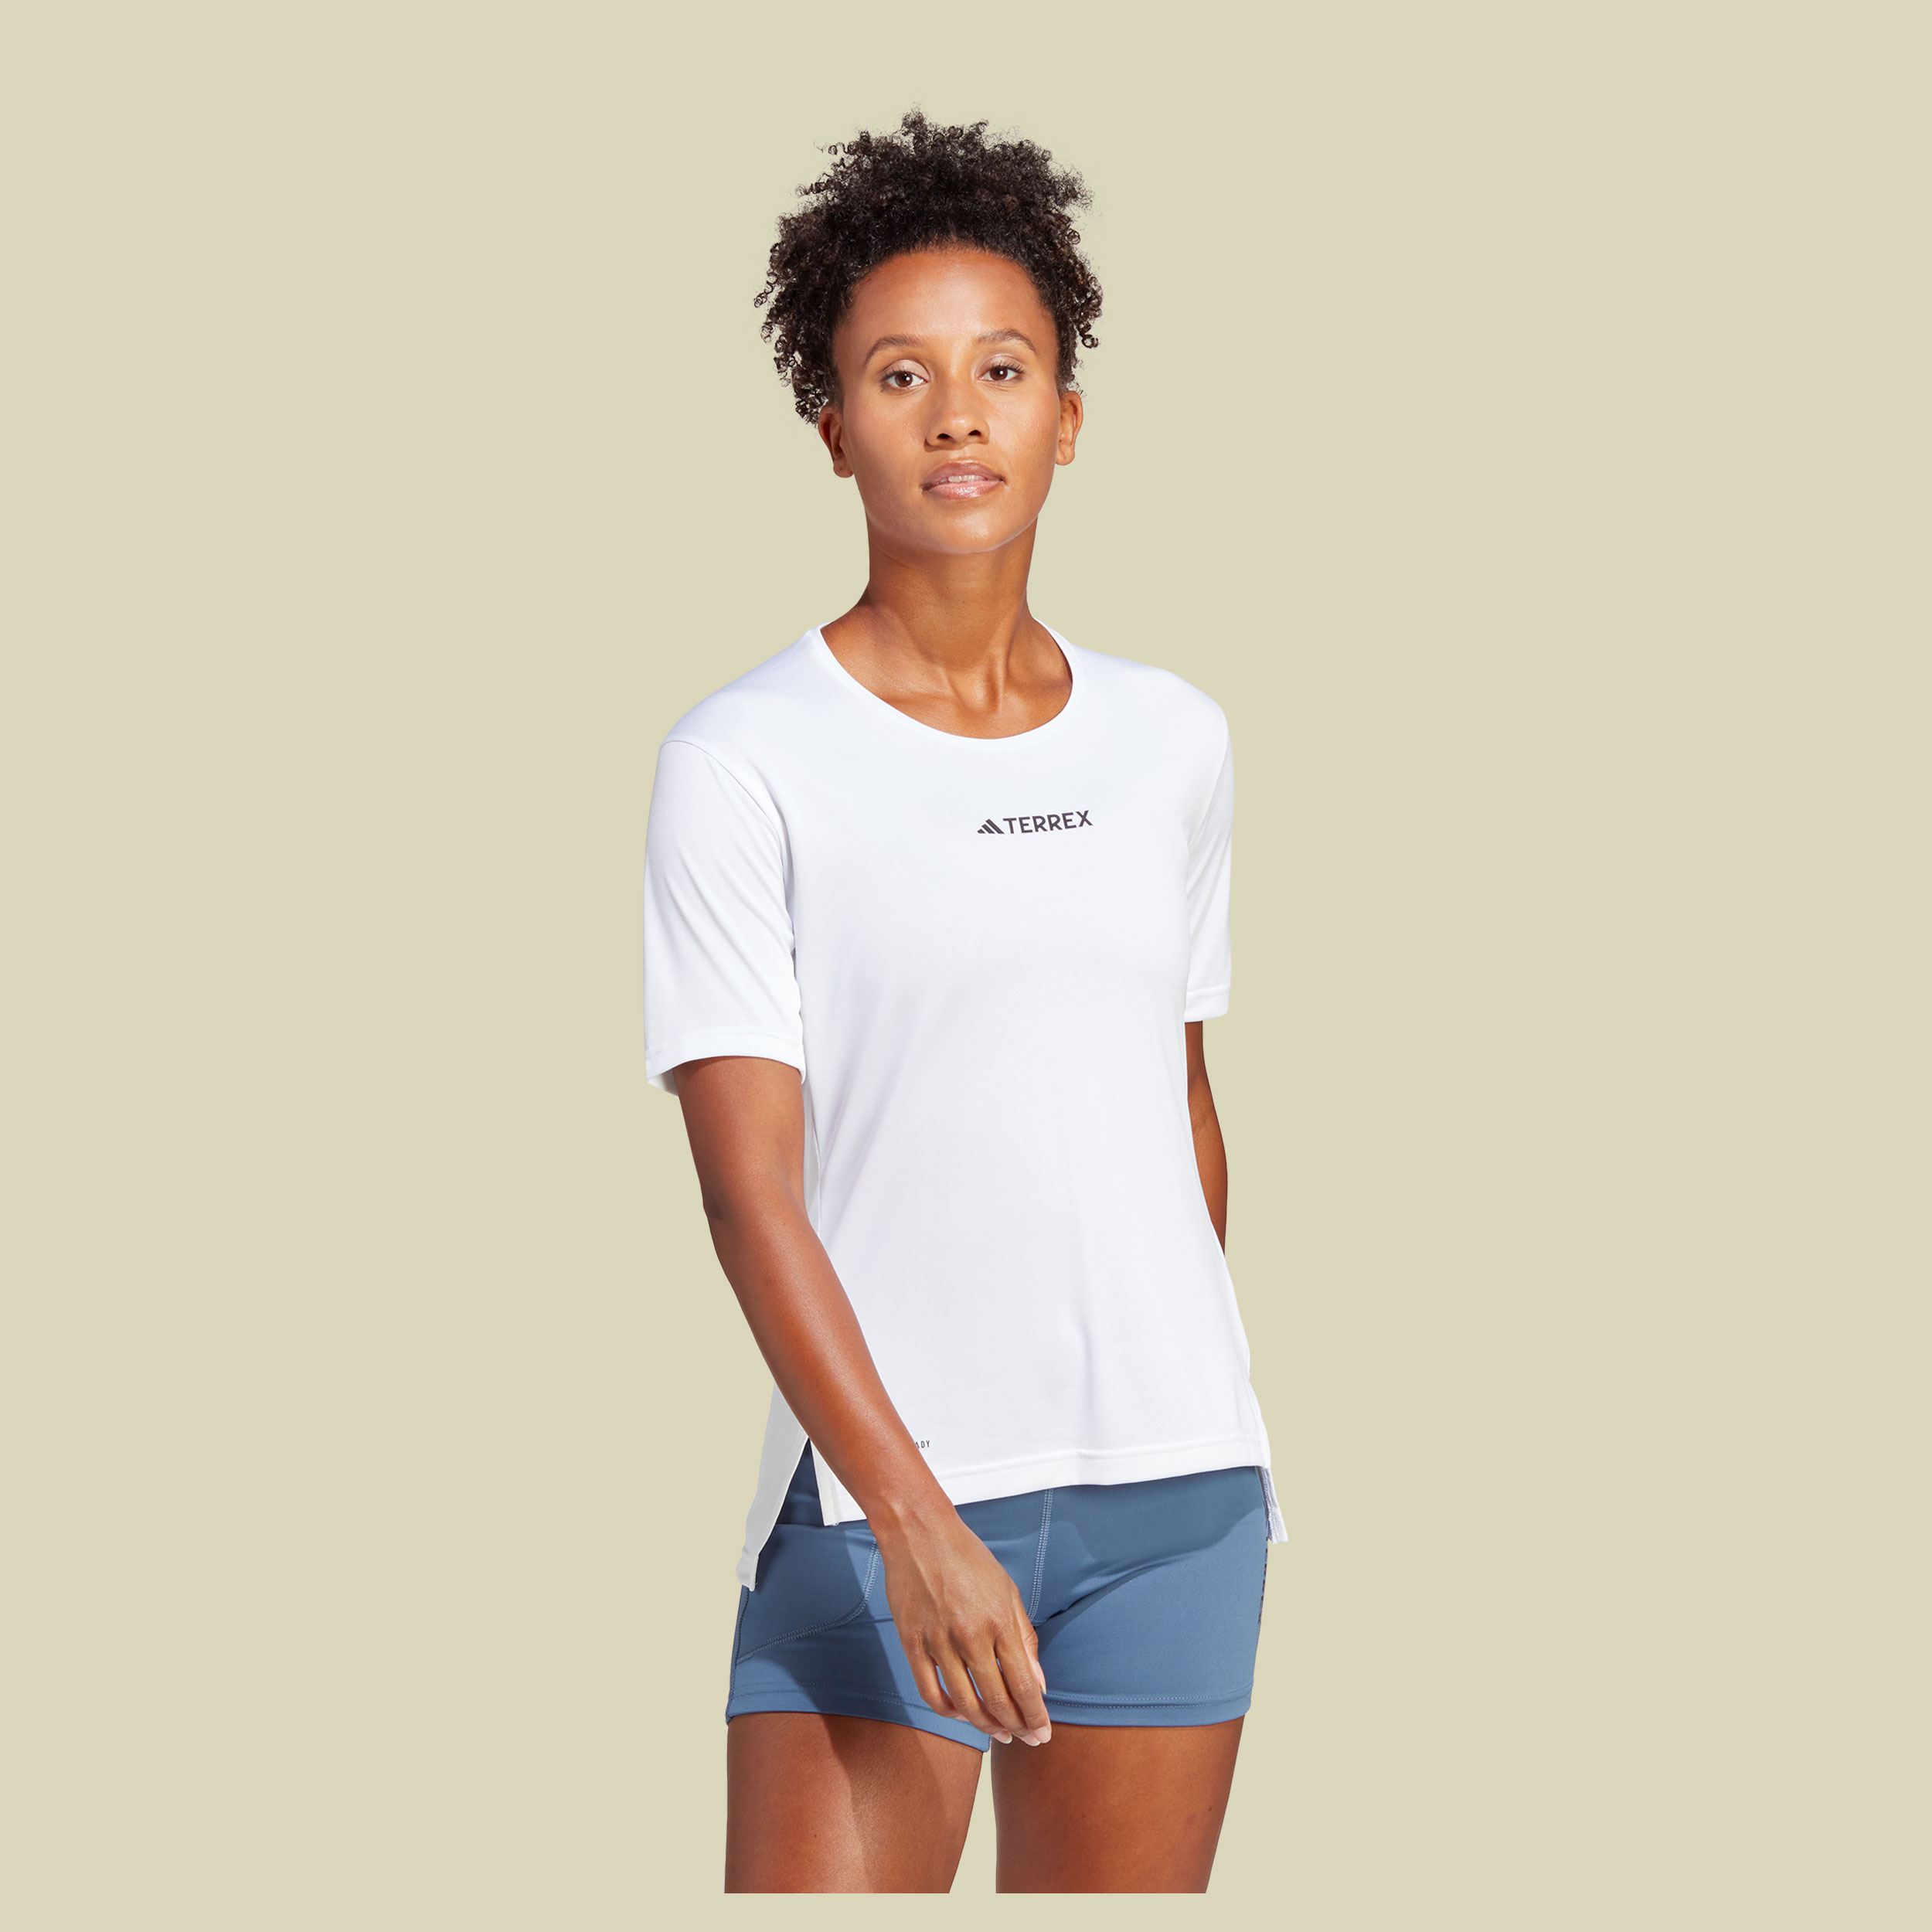 Terrex Multi T-Shirt Women Größe L  Farbe white